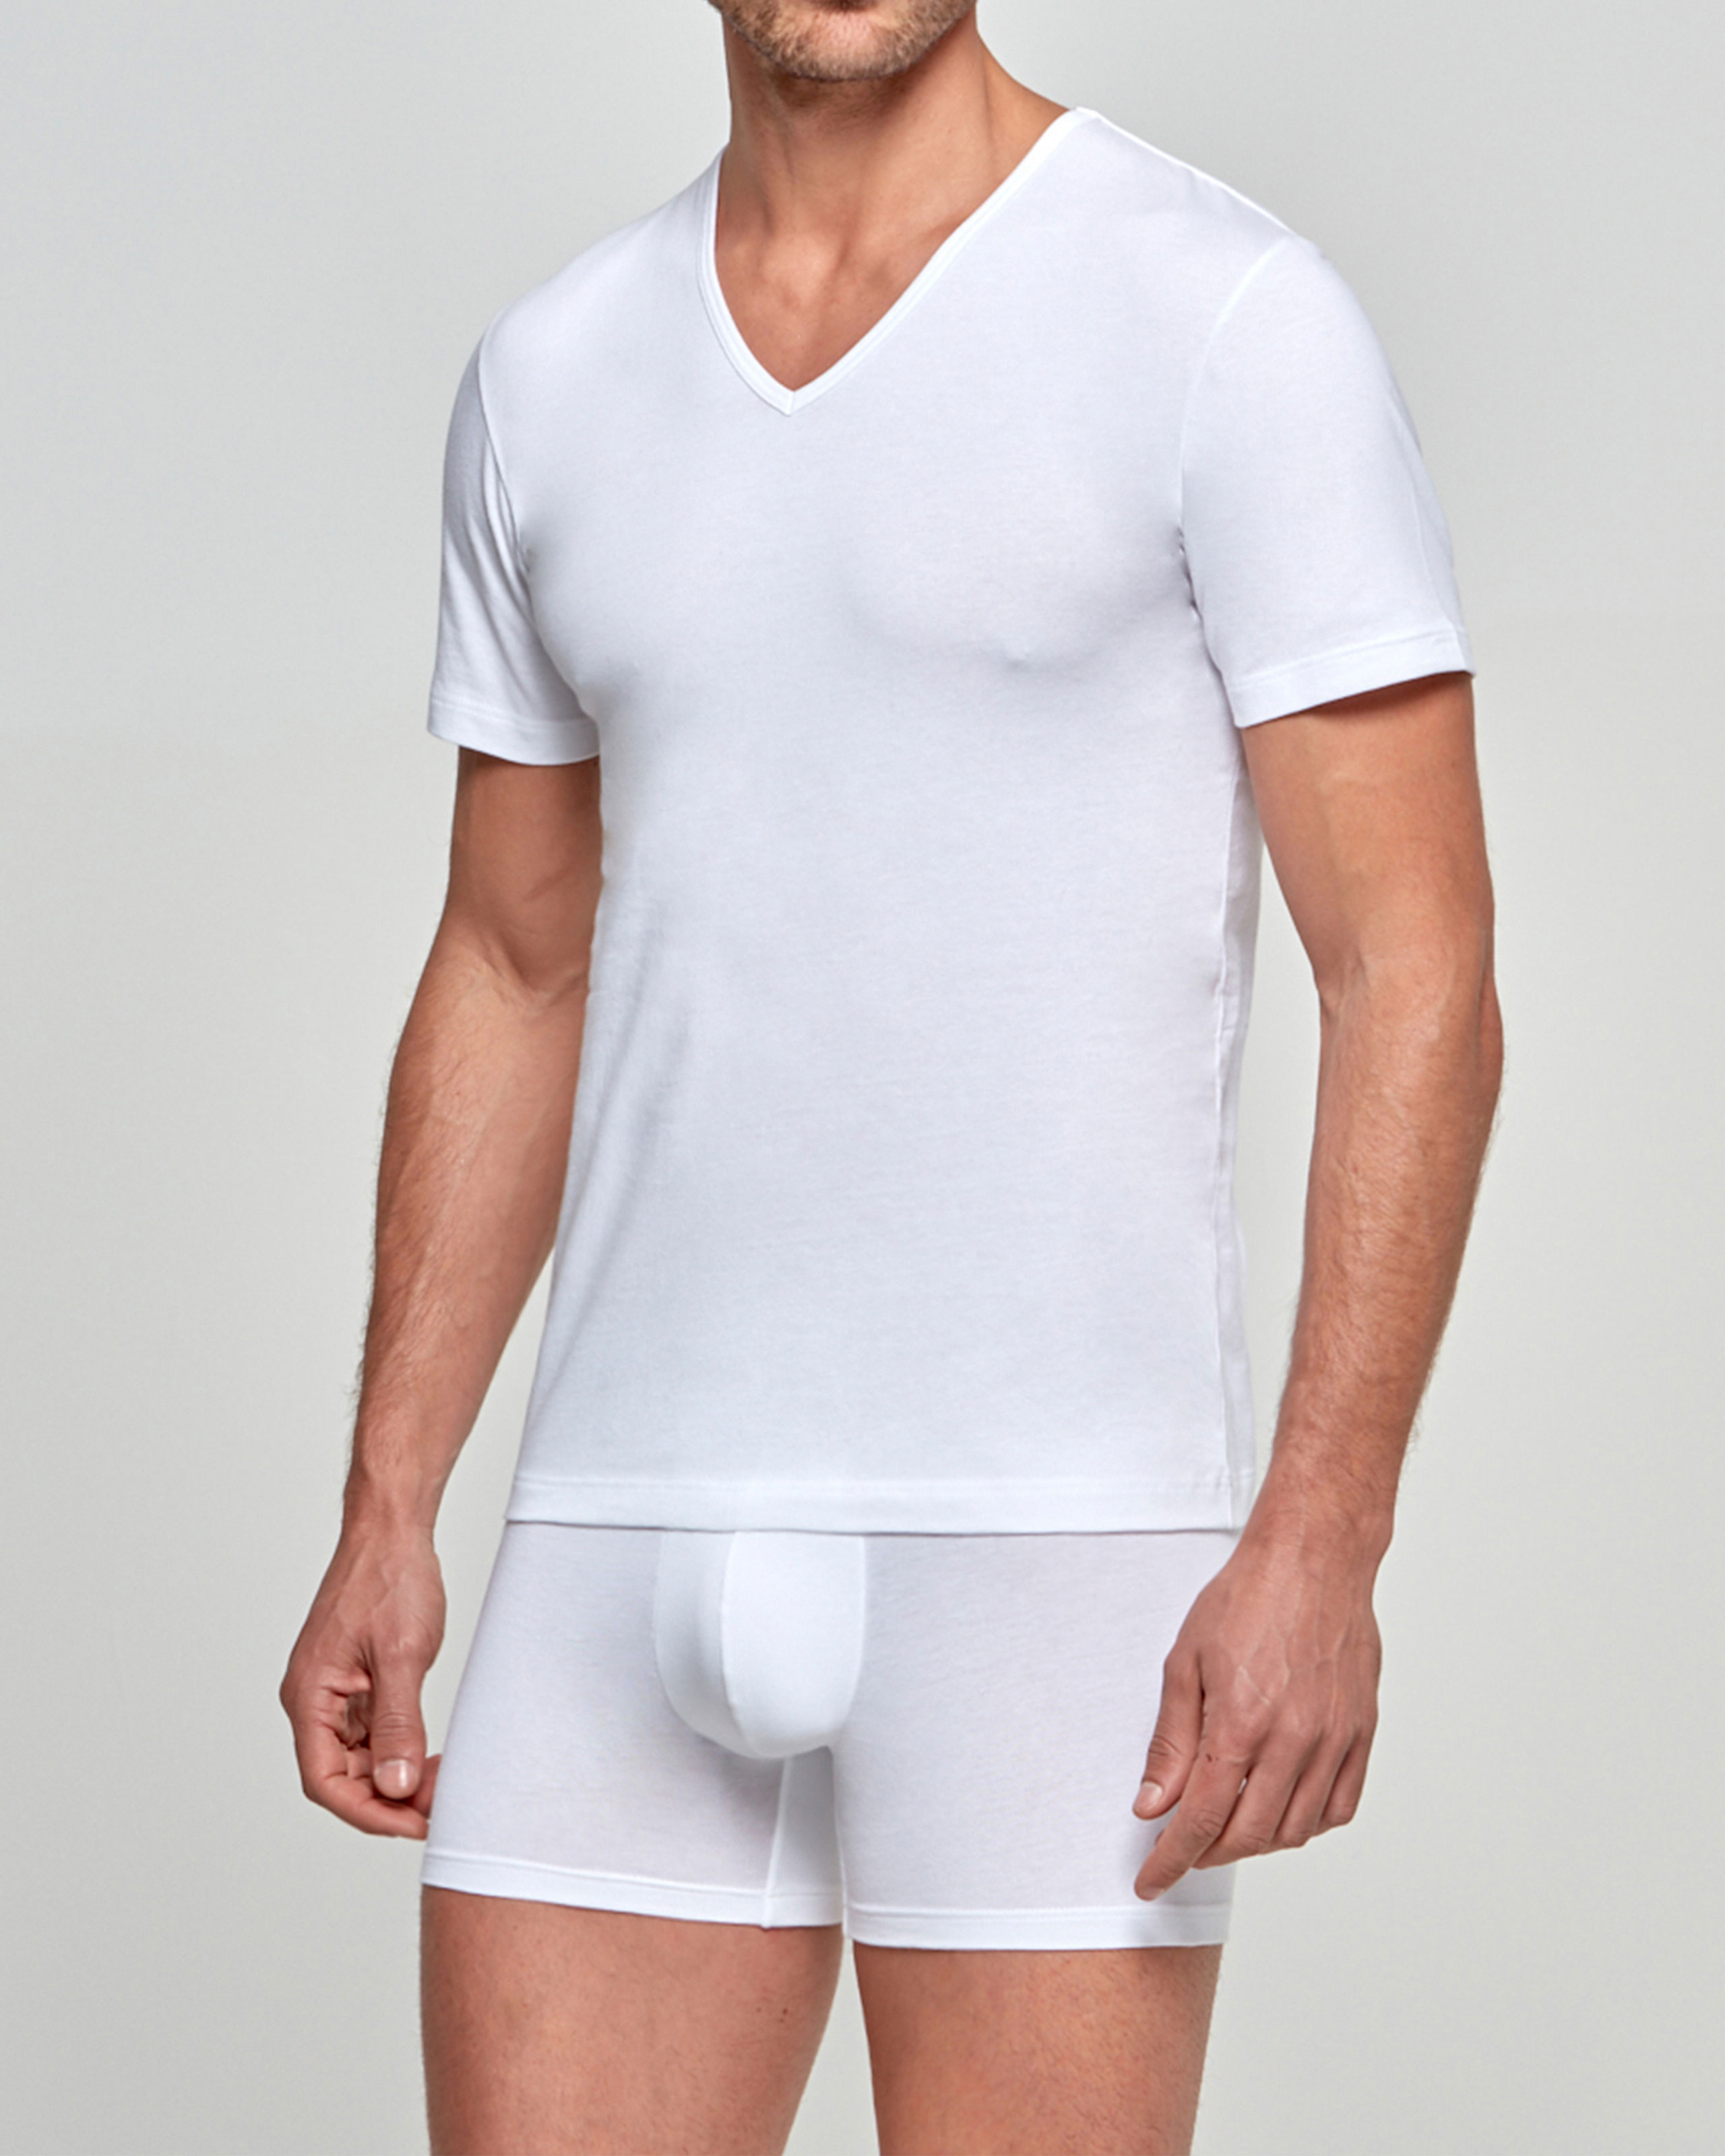 IMPETUS T-shirt de hombre Bio Cotton Blanco (L)